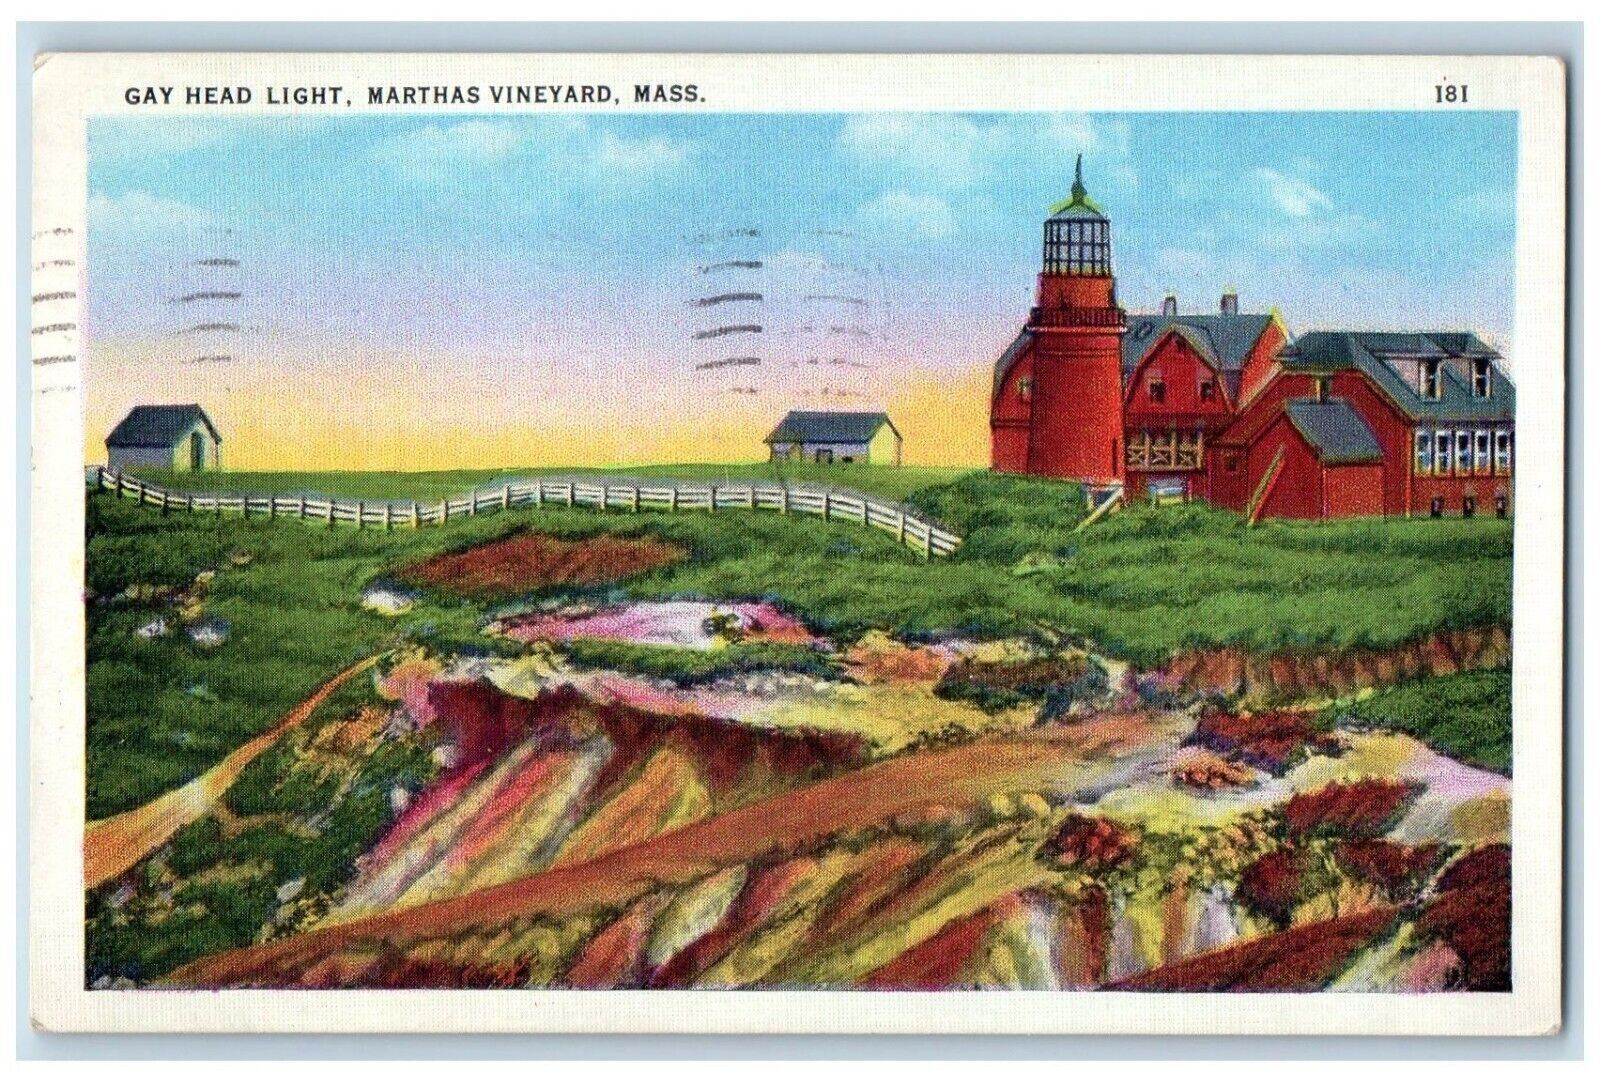 1936 Gay Head Light Marthas Vineyard Massachusetts MA Posted Vintage Postcard